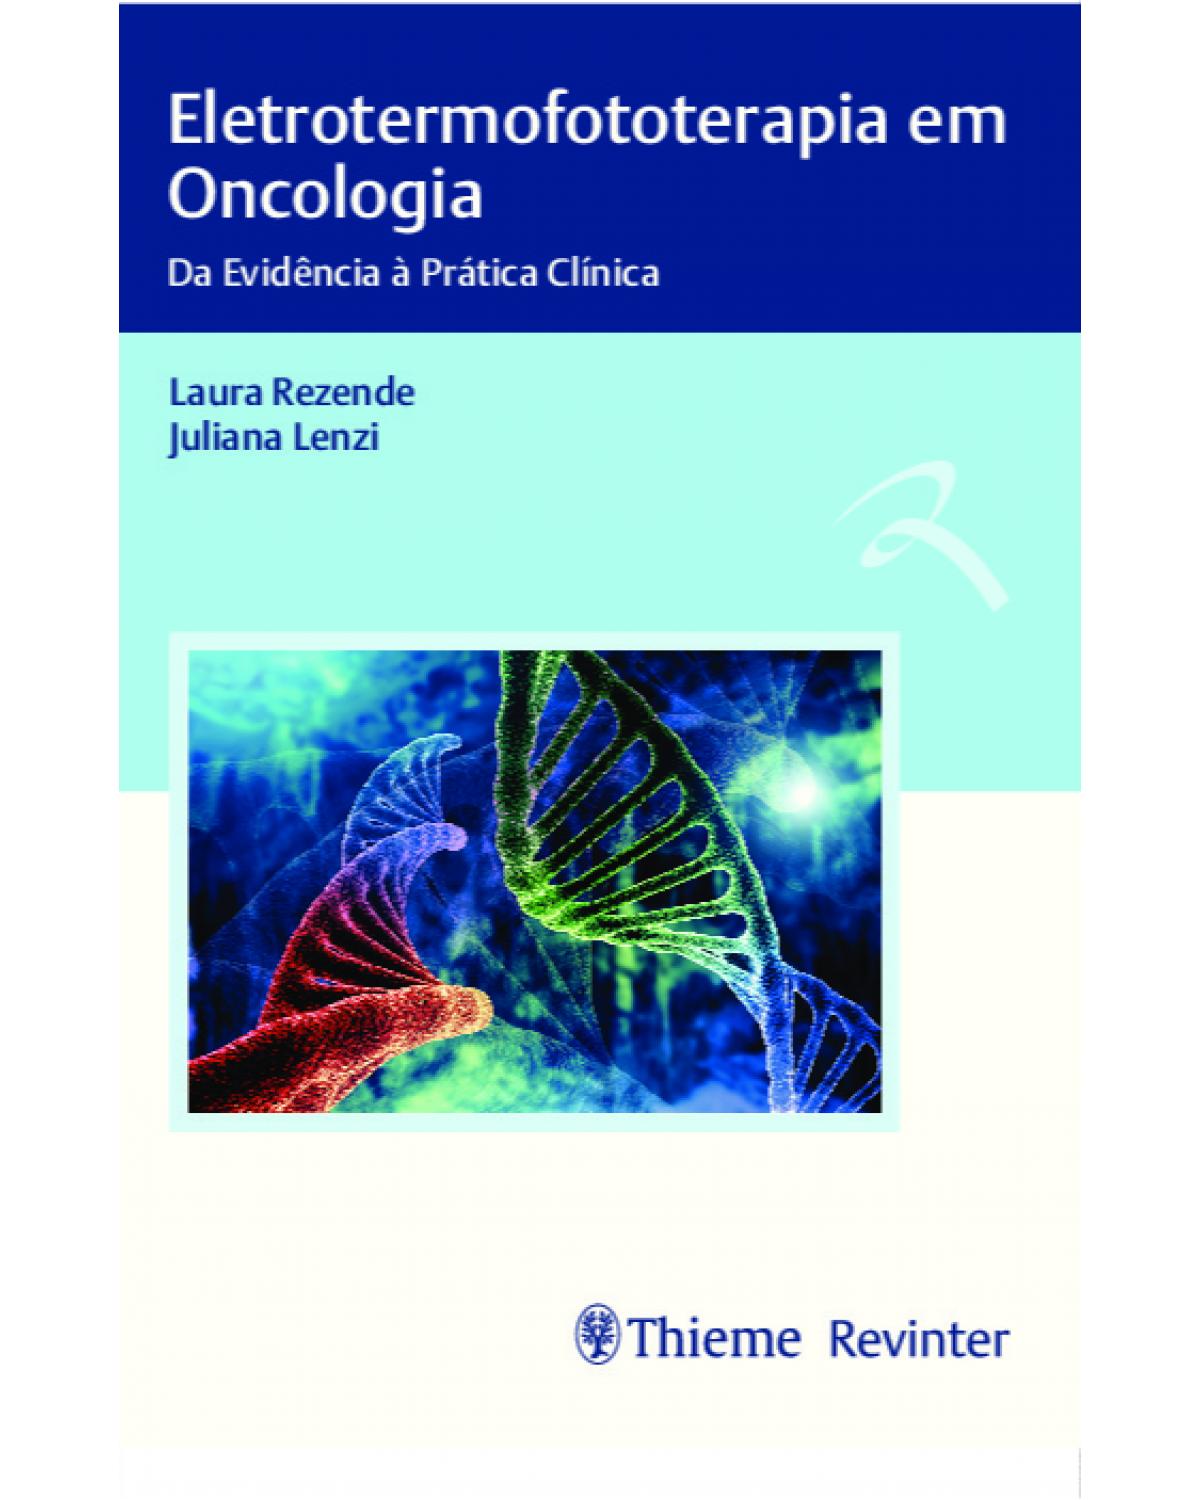 Eletrotermofototerapia em oncologia - da evidência à prática clínica - 1ª Edição | 2020